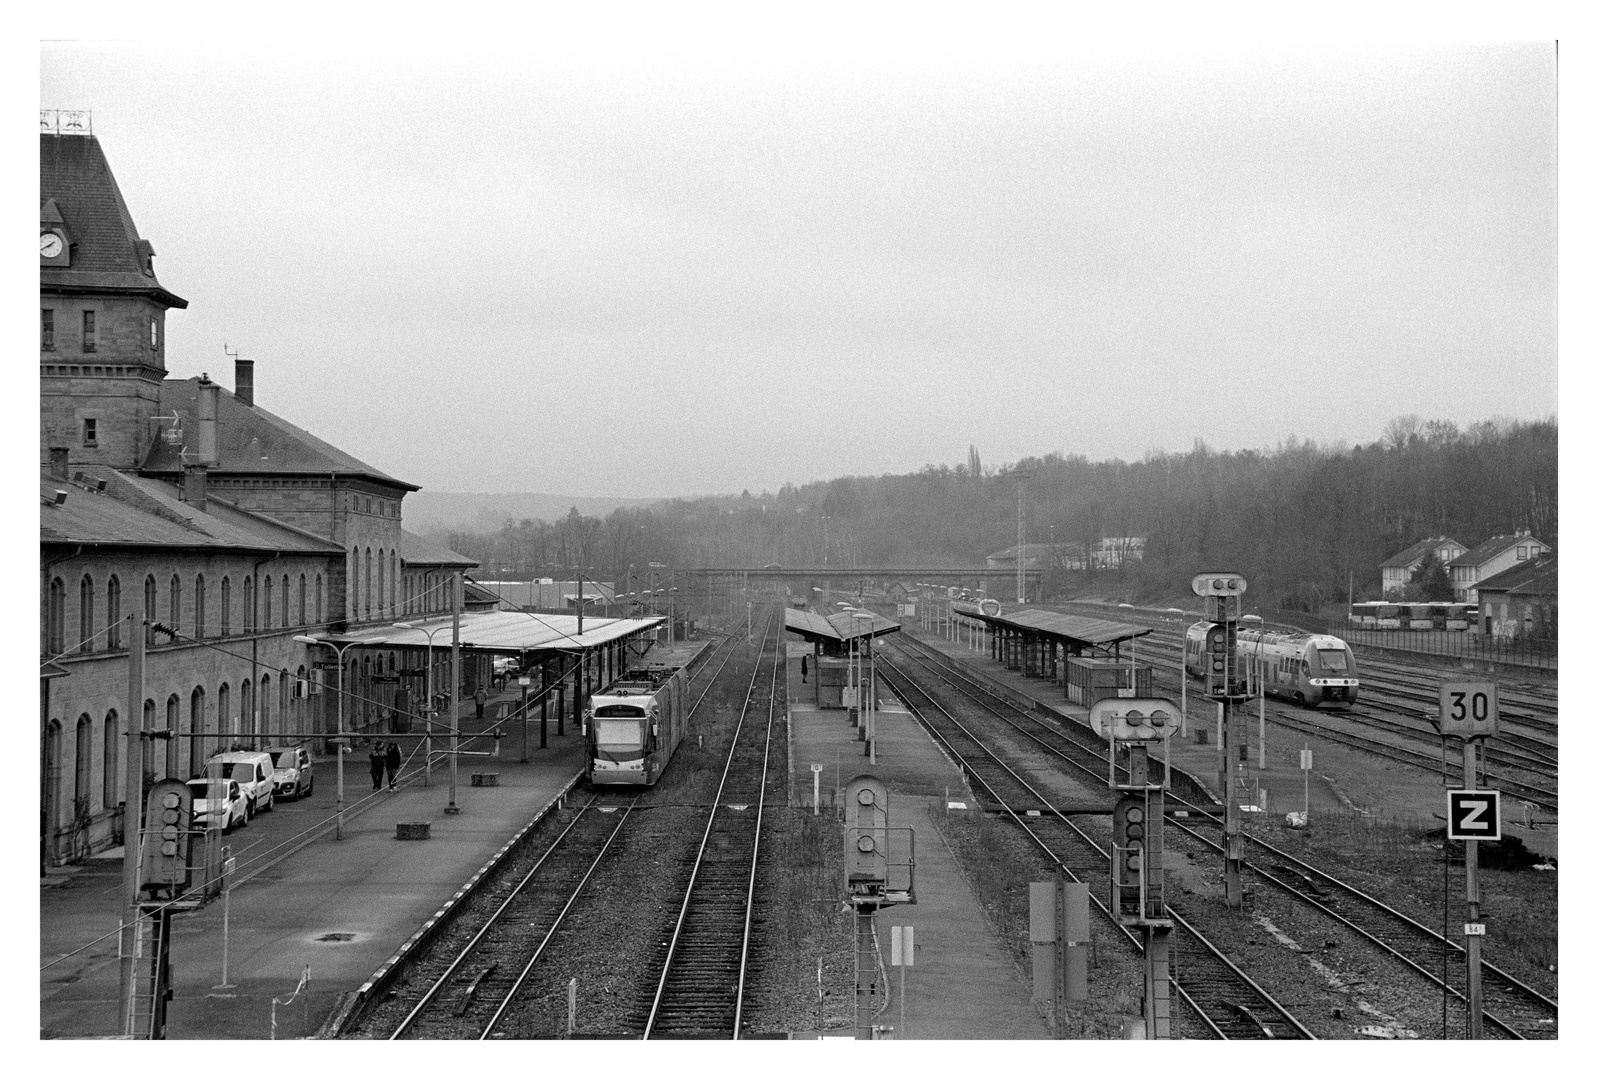 Gare de Saareguemines